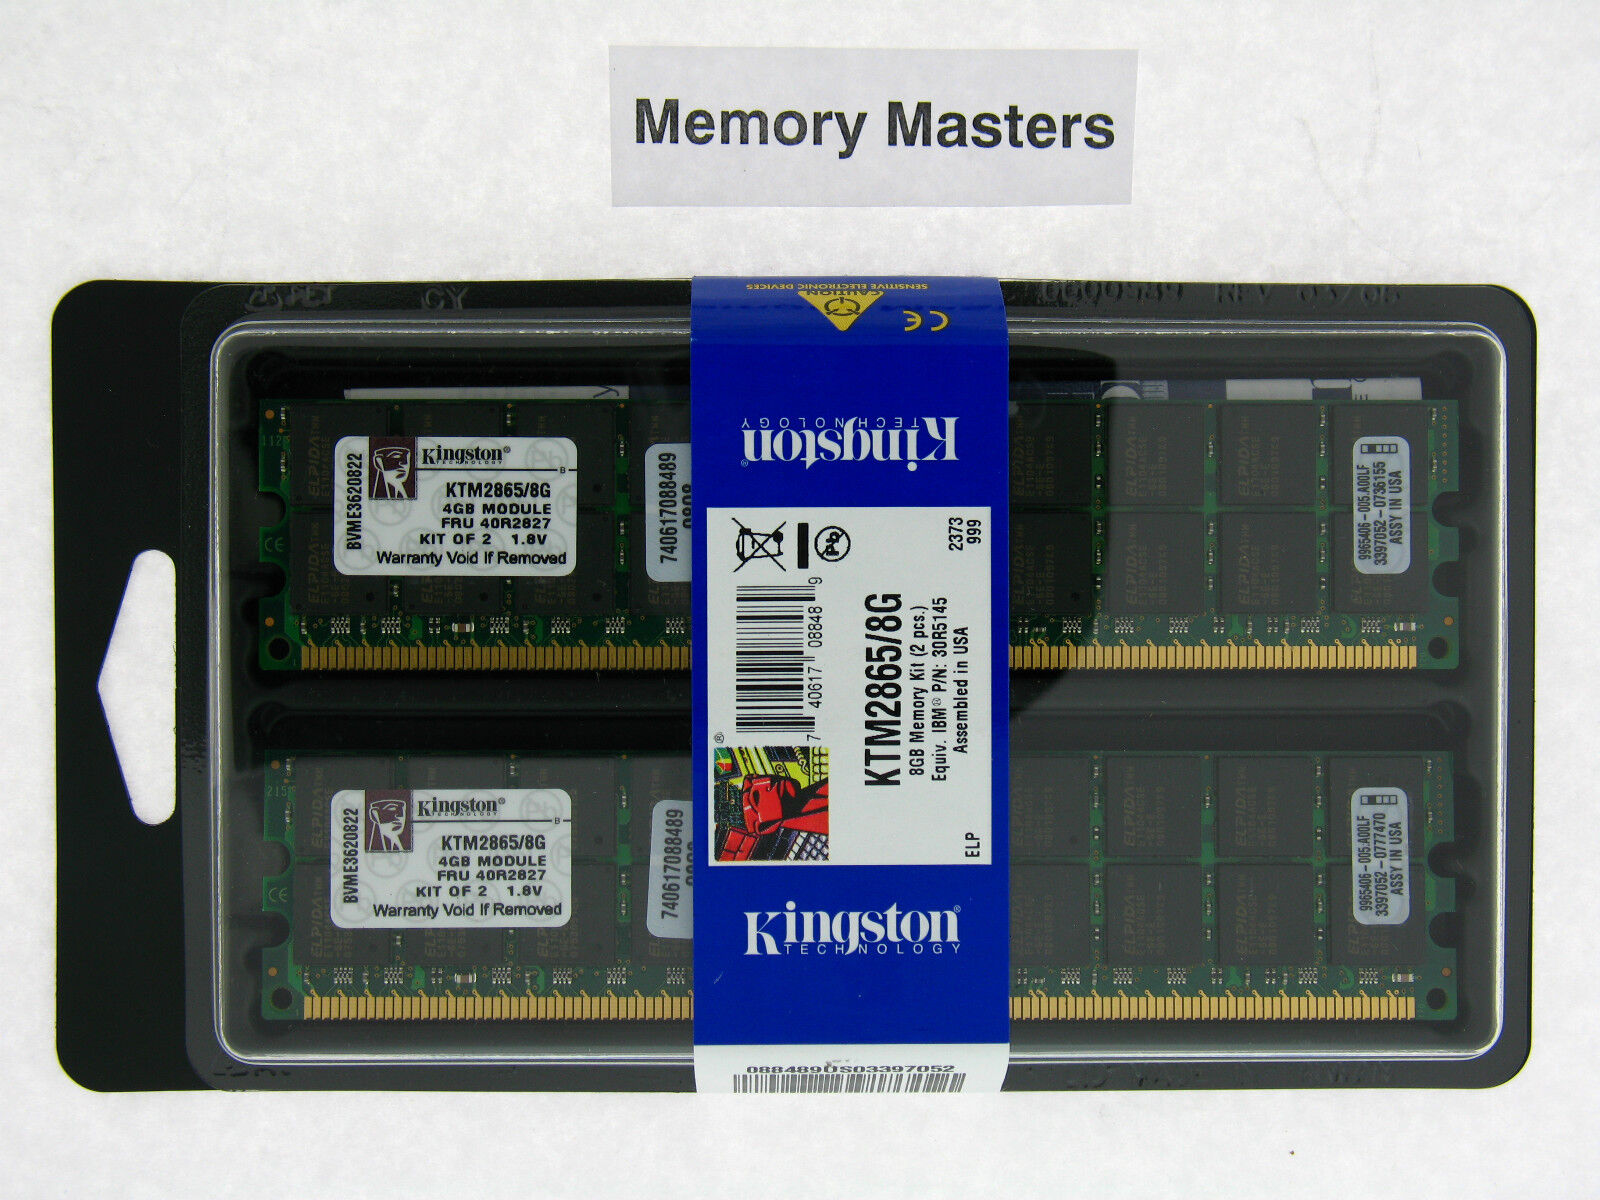 KTM2865/8G 8GB (2x4GB) PC2-3200 DDR2-400 240PIN Registered Server RAM Kit